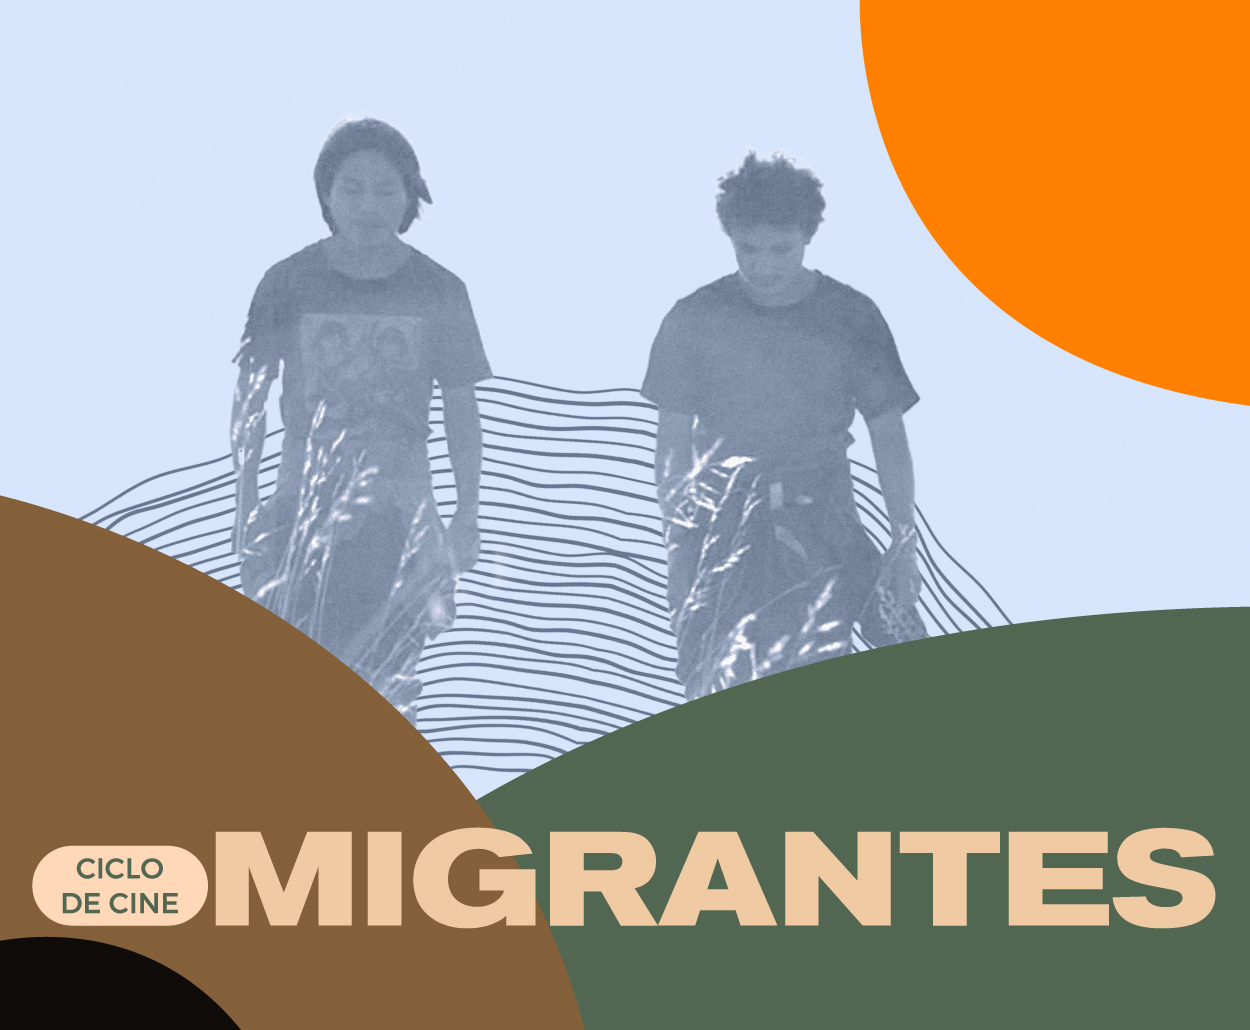 El SPR a través del Canal Catorce presenta el Ciclo de Cine “Migrantes”